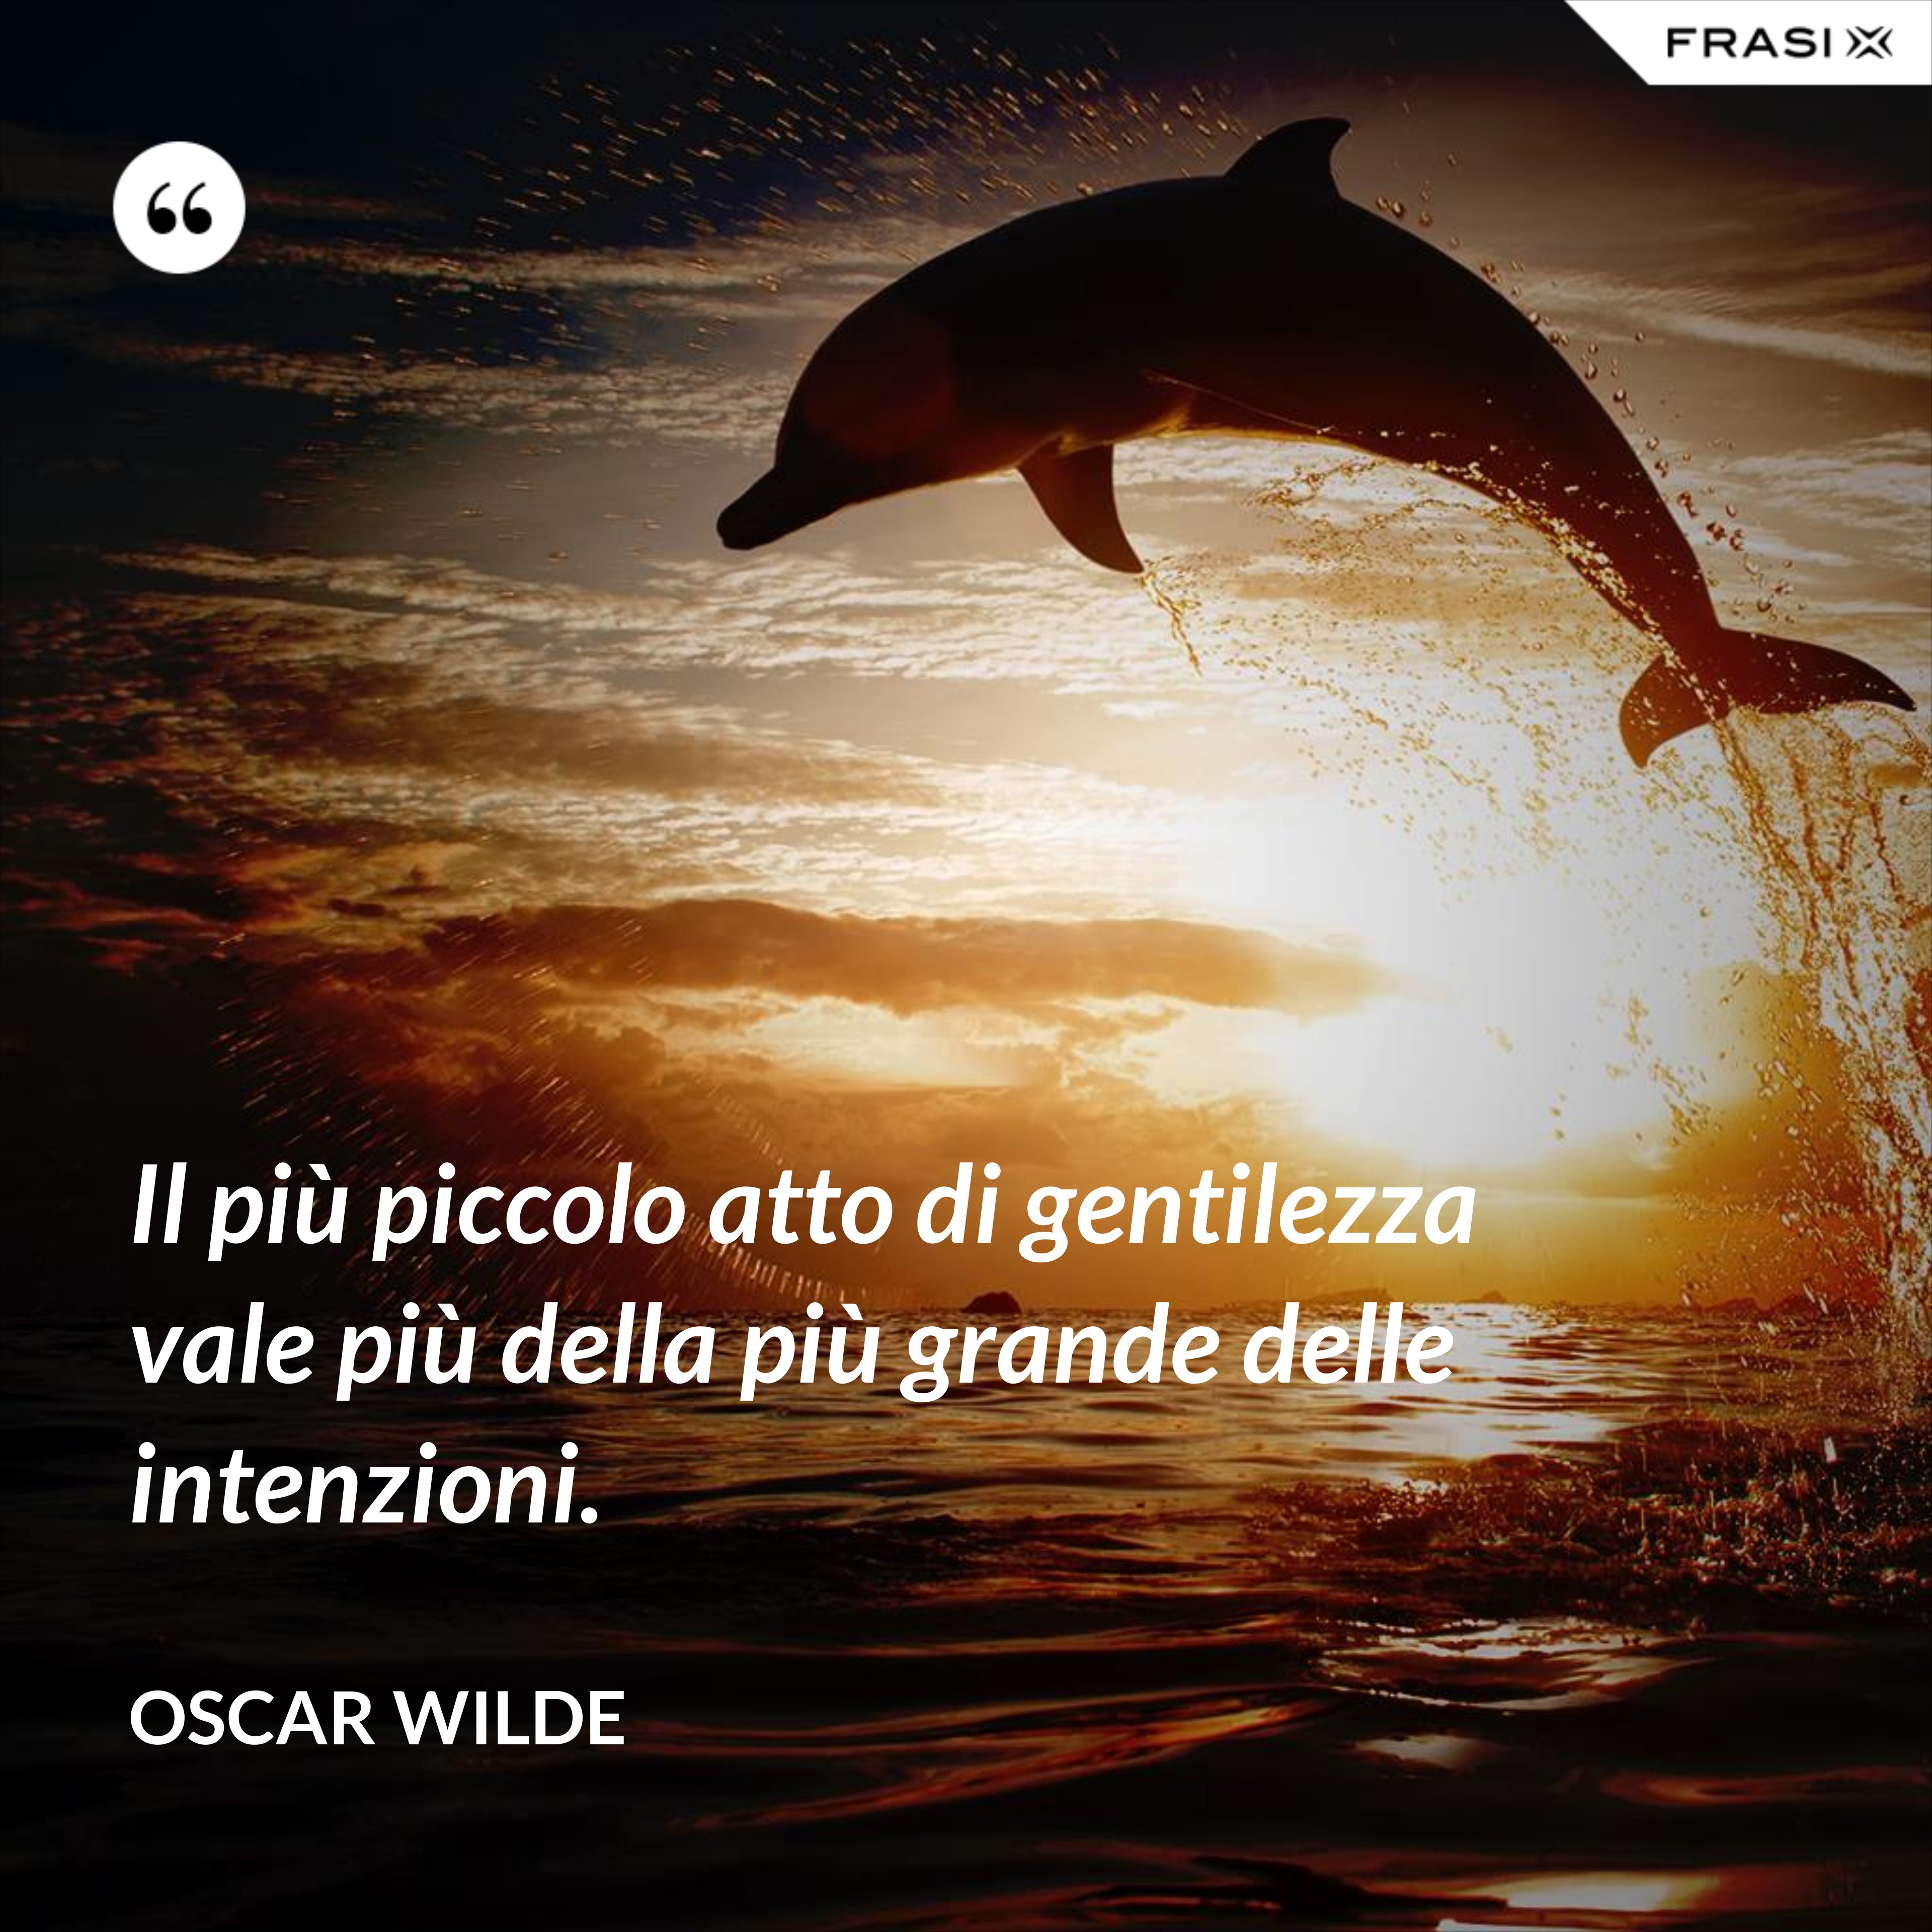 Il più piccolo atto di gentilezza vale più della più grande delle intenzioni. - Oscar Wilde